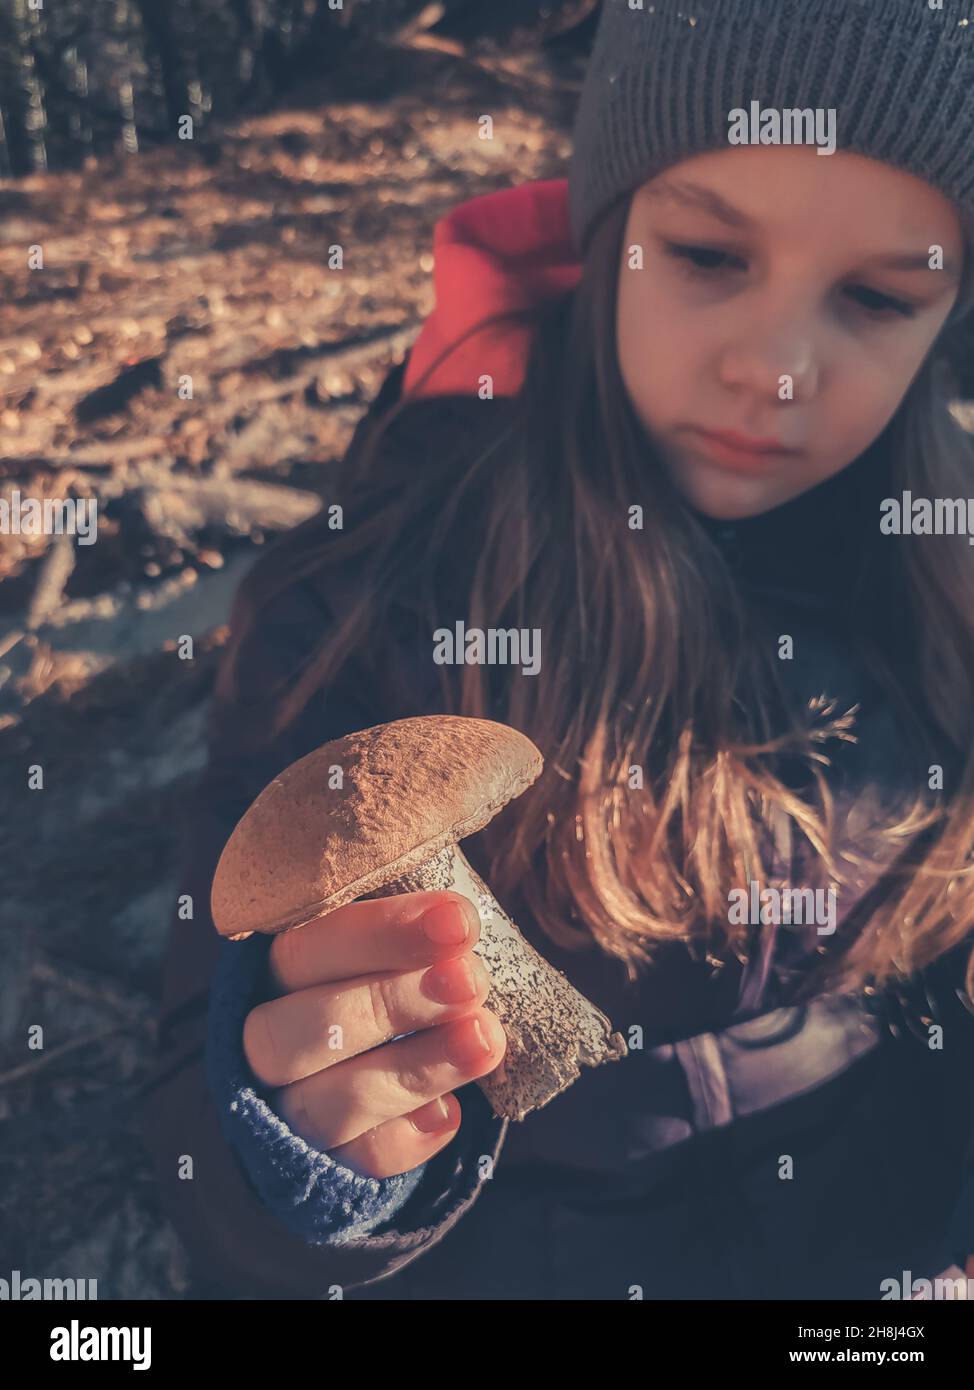 Das junge Mädchen hält einen großen Steinpilz in der Hand Stockfoto